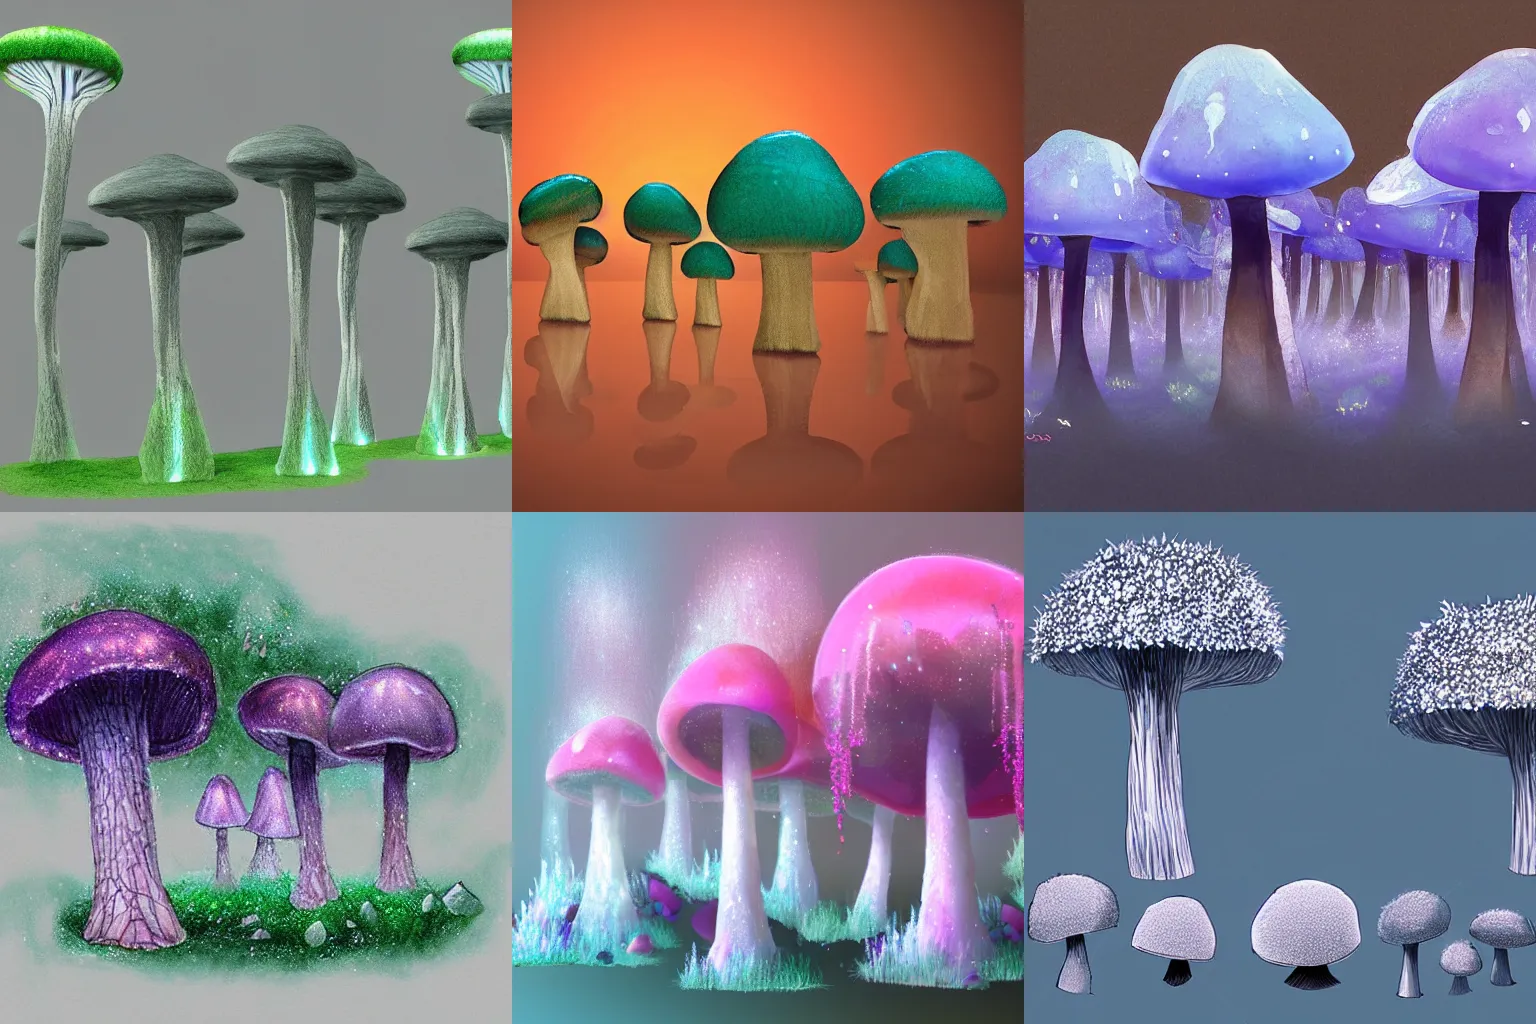 Prompt: crystal mushroom trees, concept art